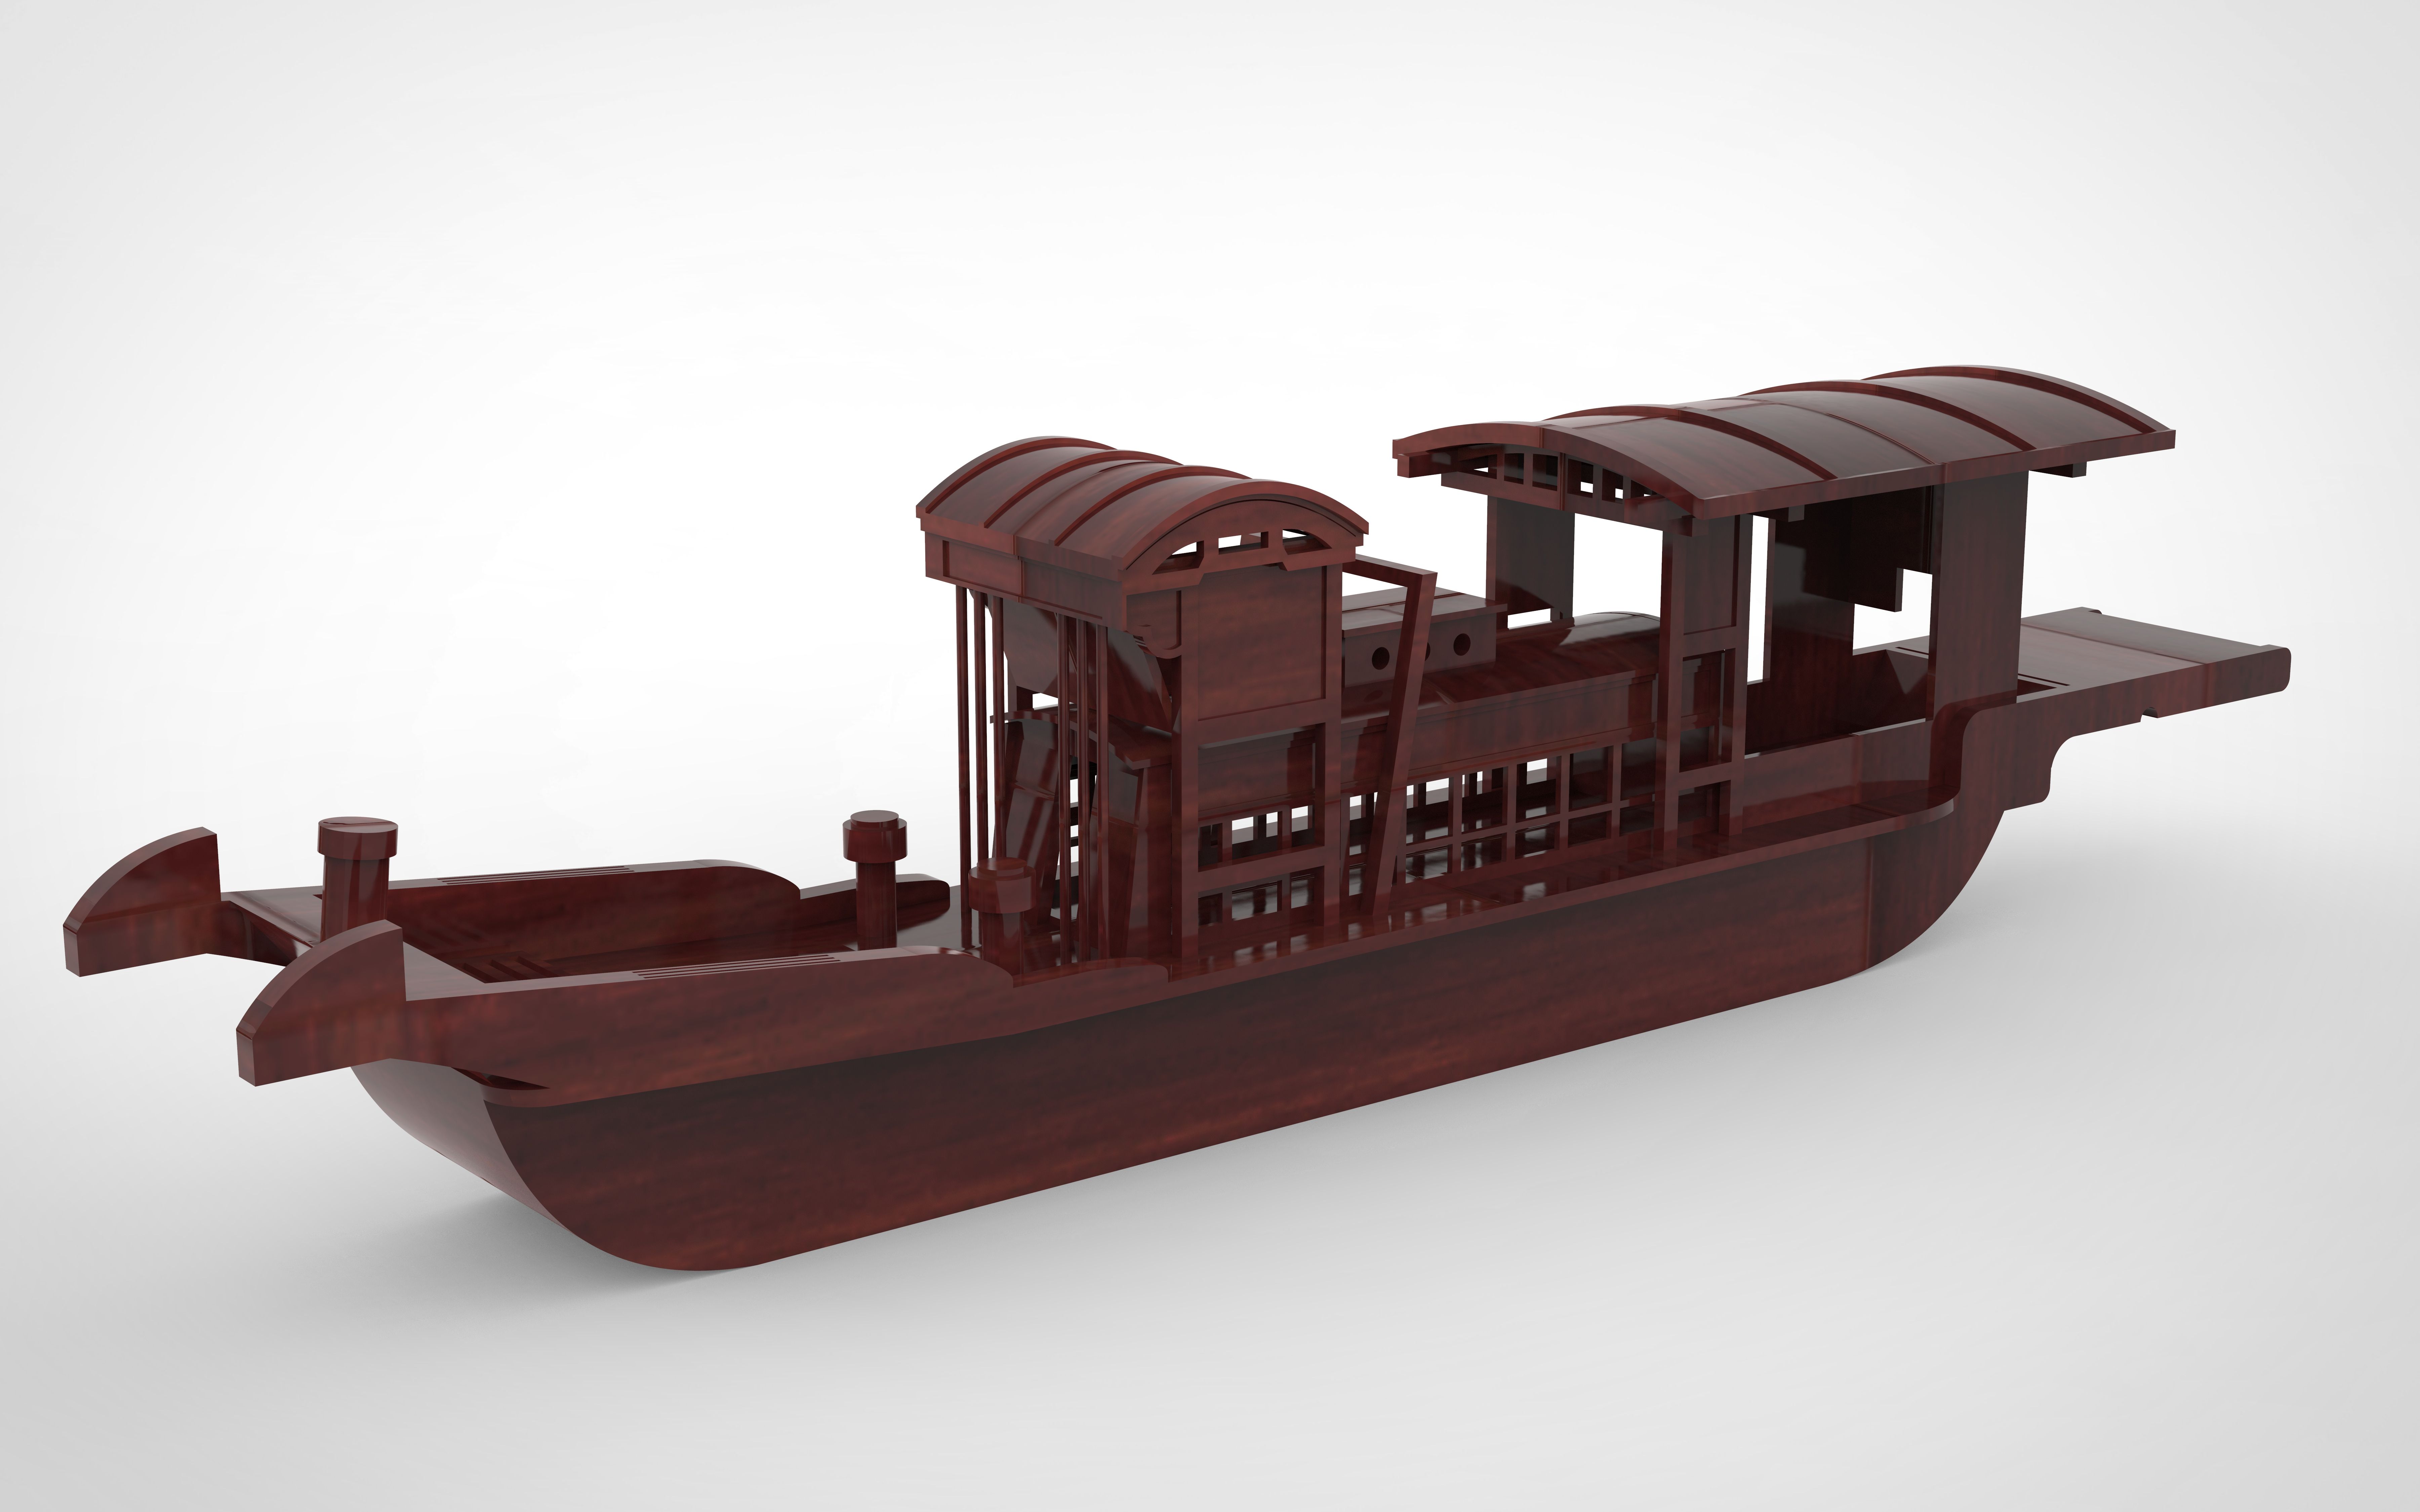 南湖红船模型制作图纸图片